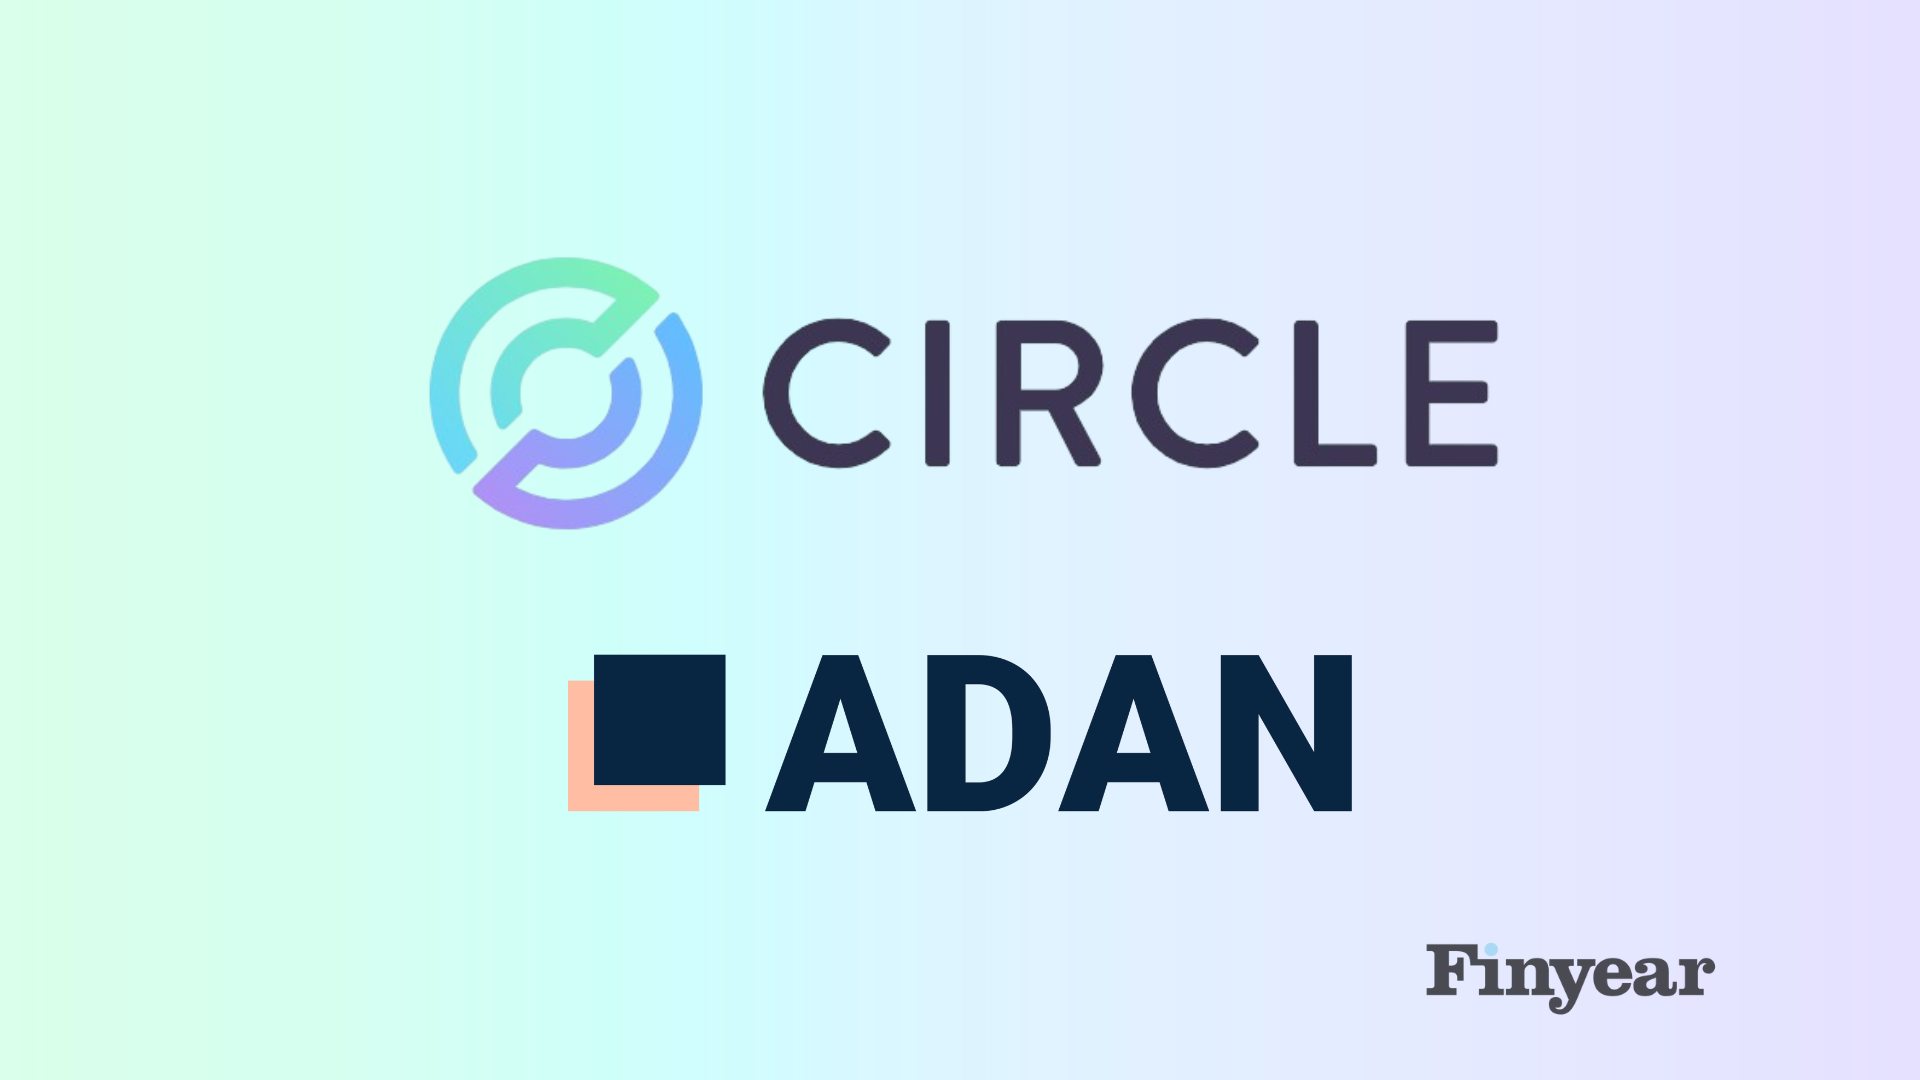 Circle officialise son adhésion à l'Adan